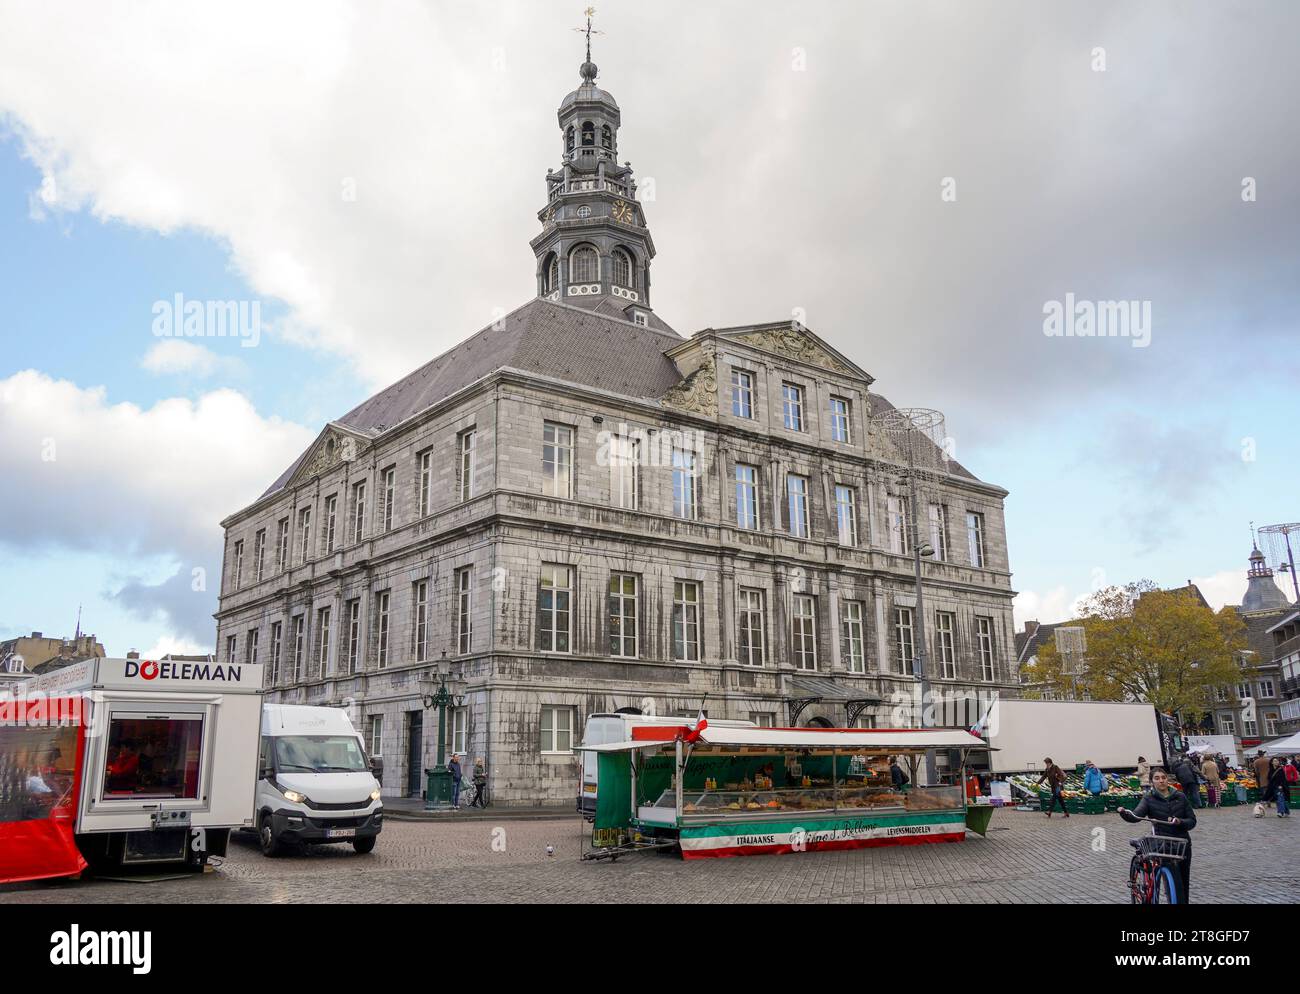 L'hôtel de ville, hôtel de ville, hôtel de ville, à la place du marché, Maastricht, Limbourg, Pays-Bas. Banque D'Images